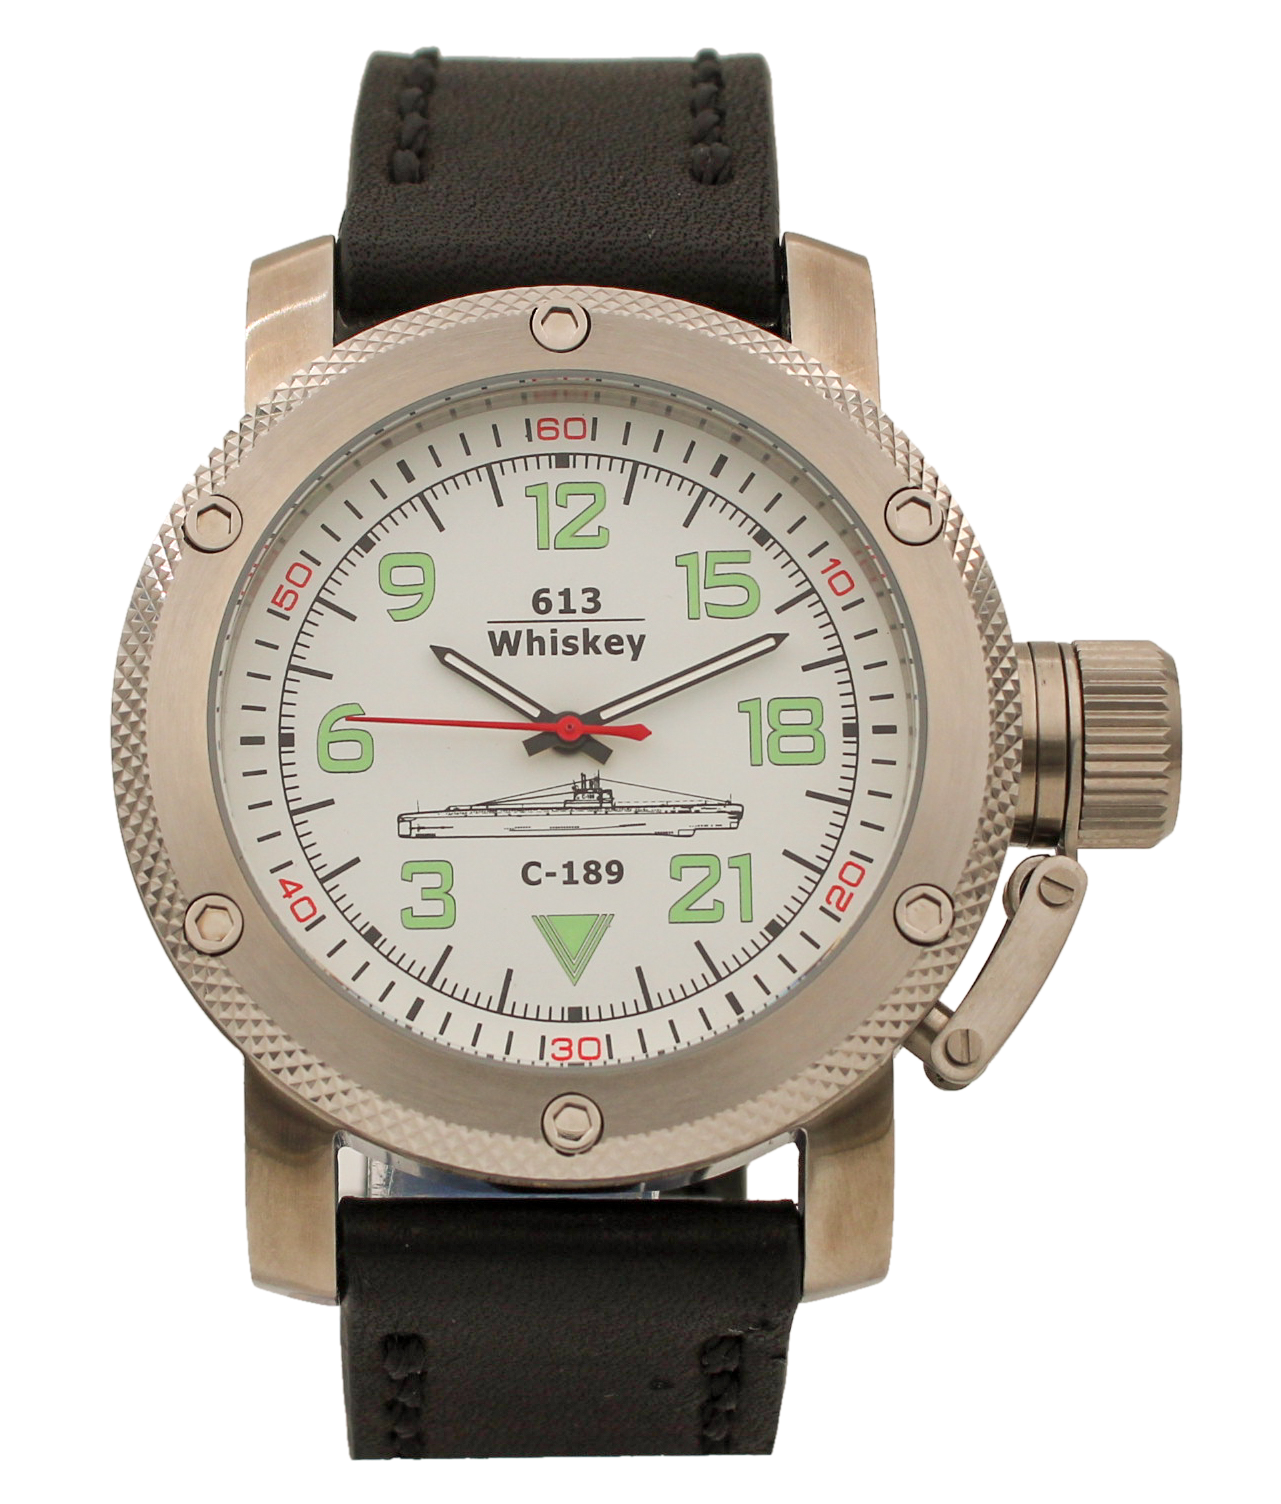 Наручные часы мужские Watch Triumph С-189 (Whiskey)